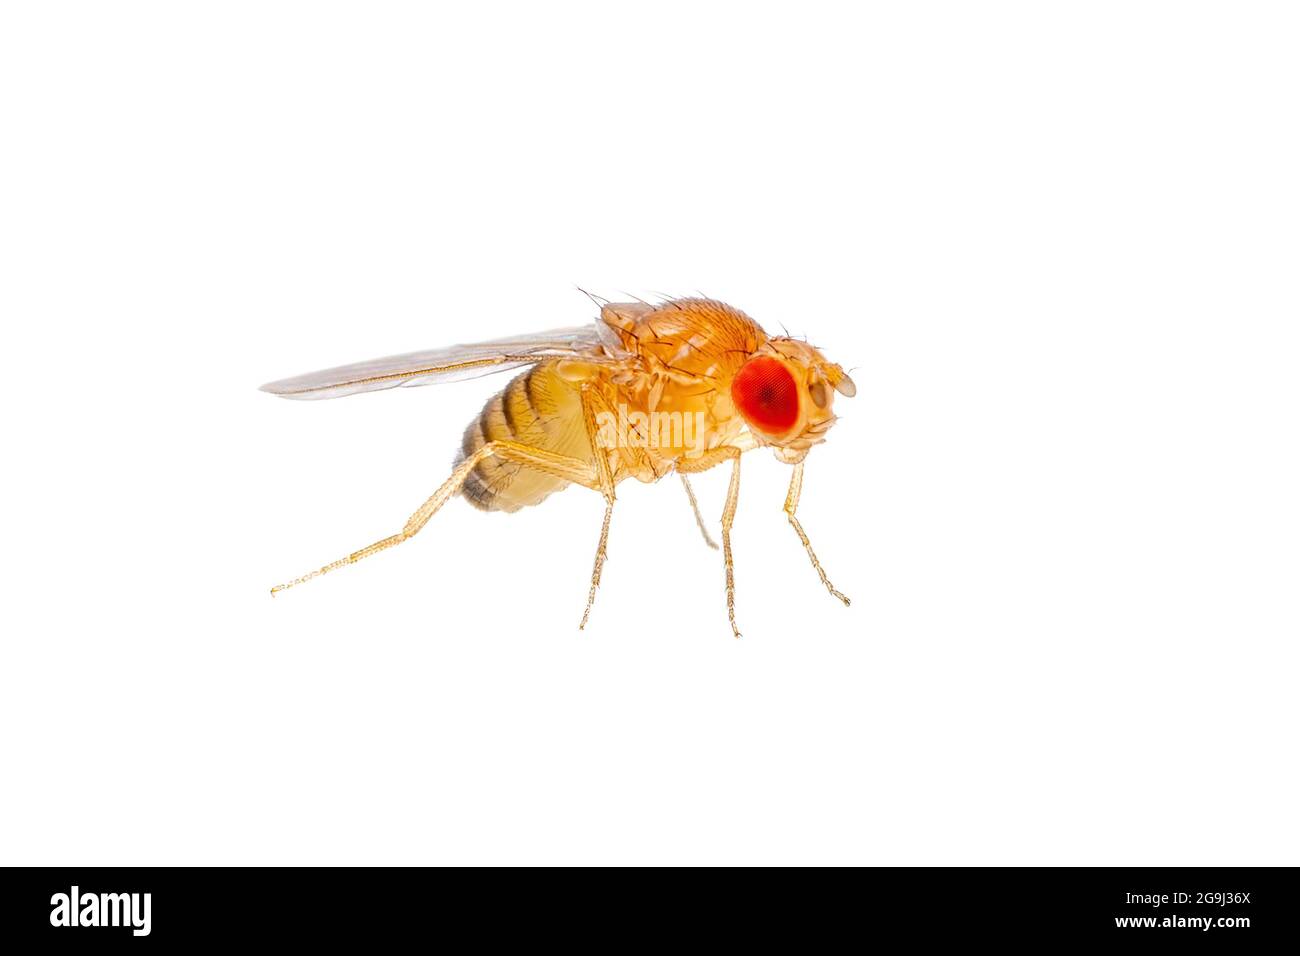 Espèce exotique de drosophile parasite Diptera insecte isolé sur fond blanc Banque D'Images